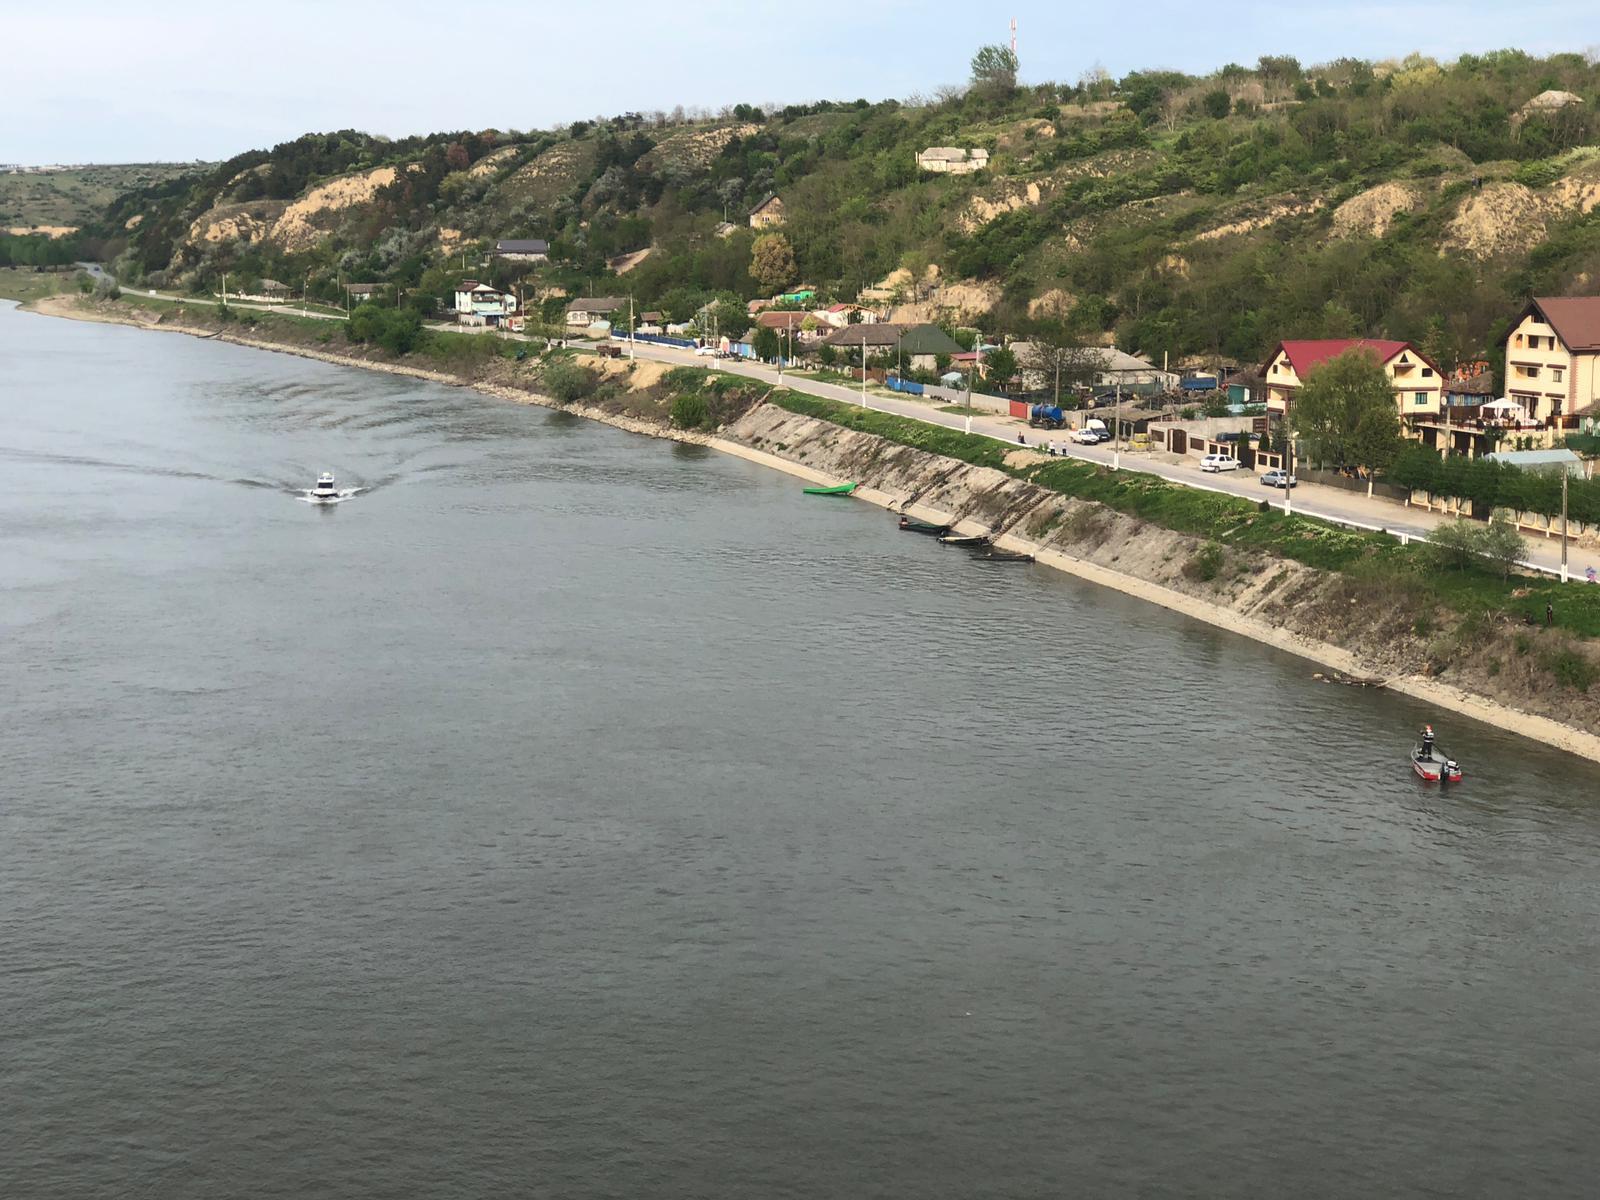 Executivul a aprobat alocarea din fondul de intervenţie a sumei de 9,5 milioane lei pentru executarea în regim de urgenţă a unor operaţiuni de dragare a fluviului Dunărea